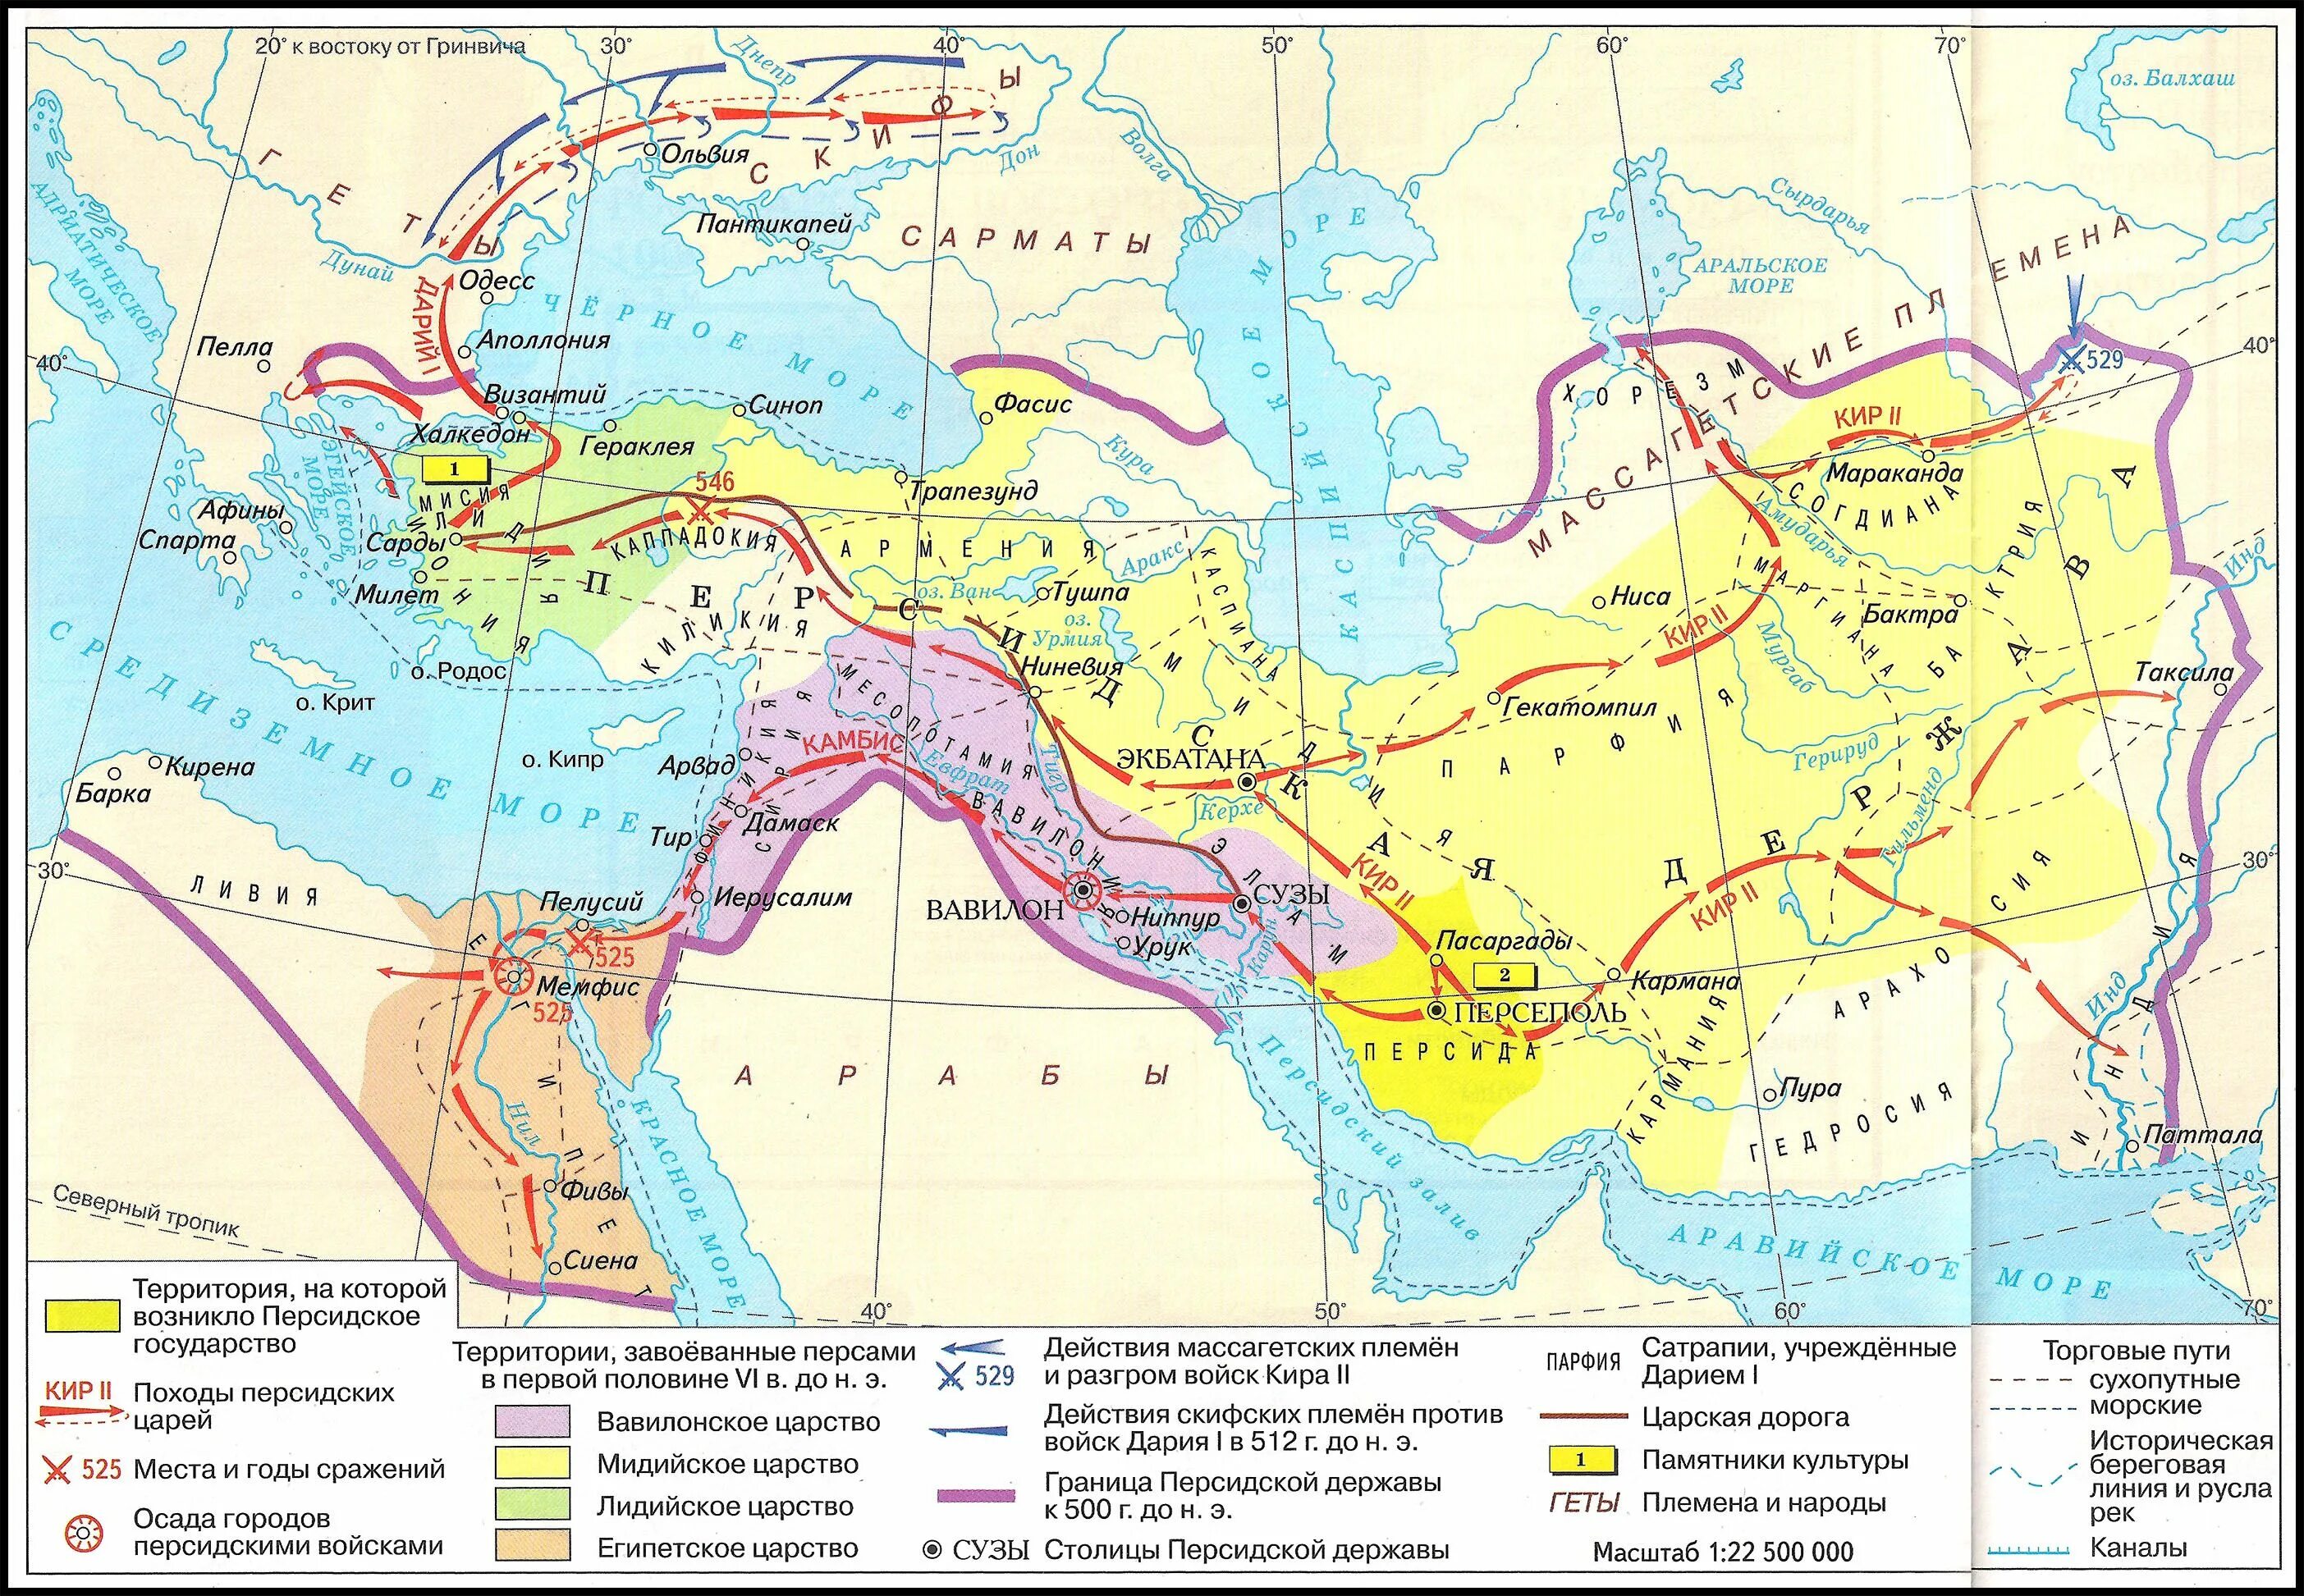 Персидская держава на карте впр. Персидская держава 550-330 гг до н э.